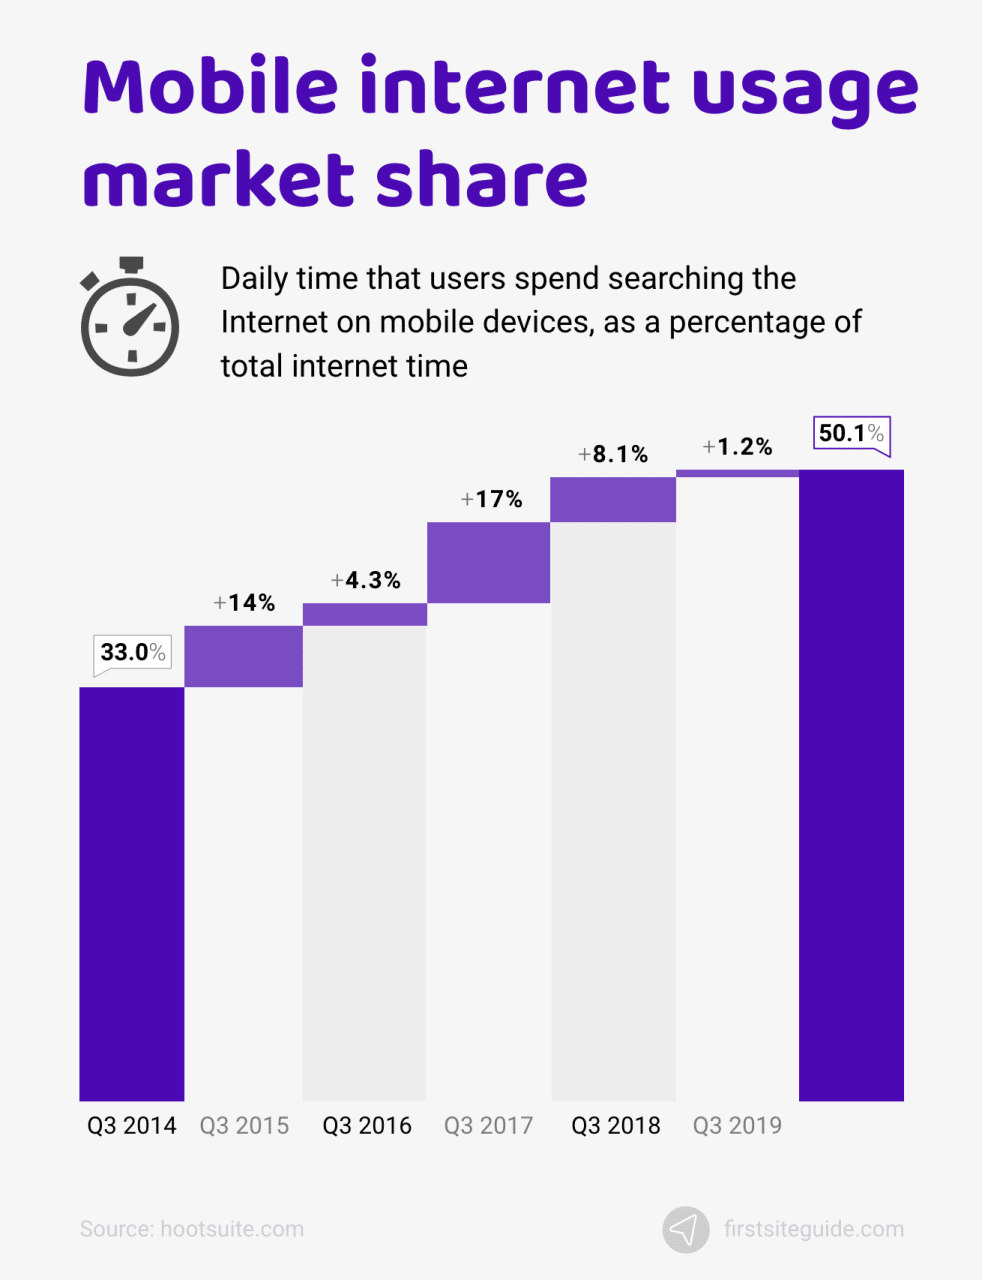 Porcentaje del tiempo total de Internet dedicado a los móviles